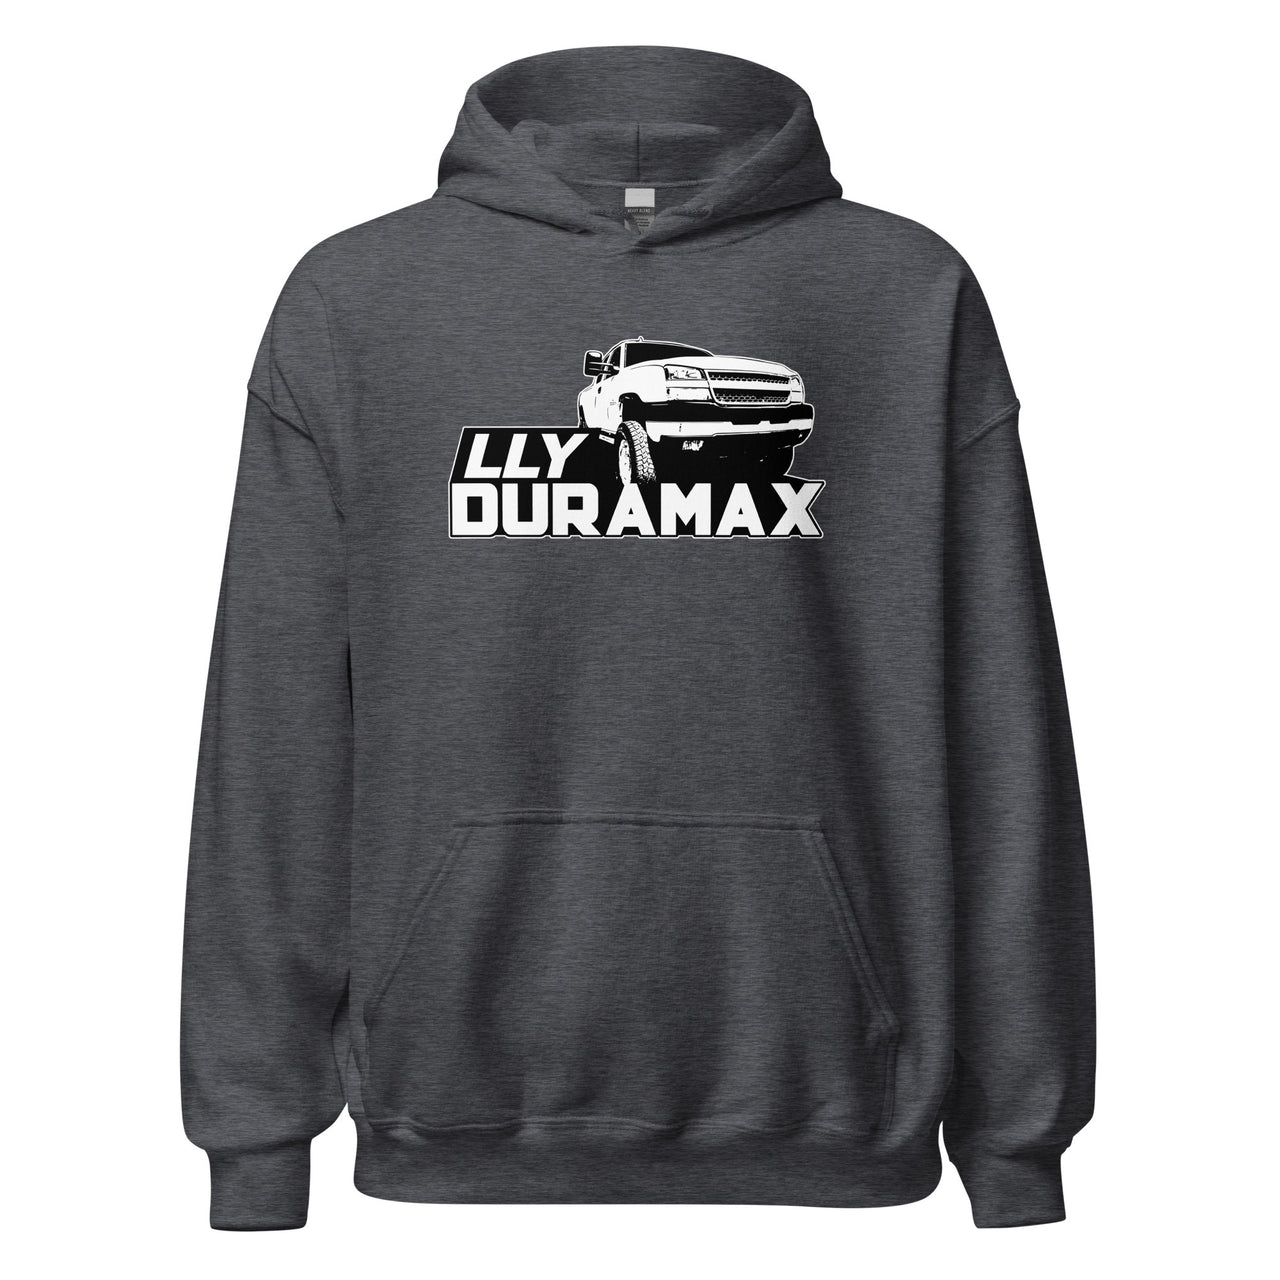 LLY Duramax Truck Hoodie Sweatshirt in DARK HEATHER